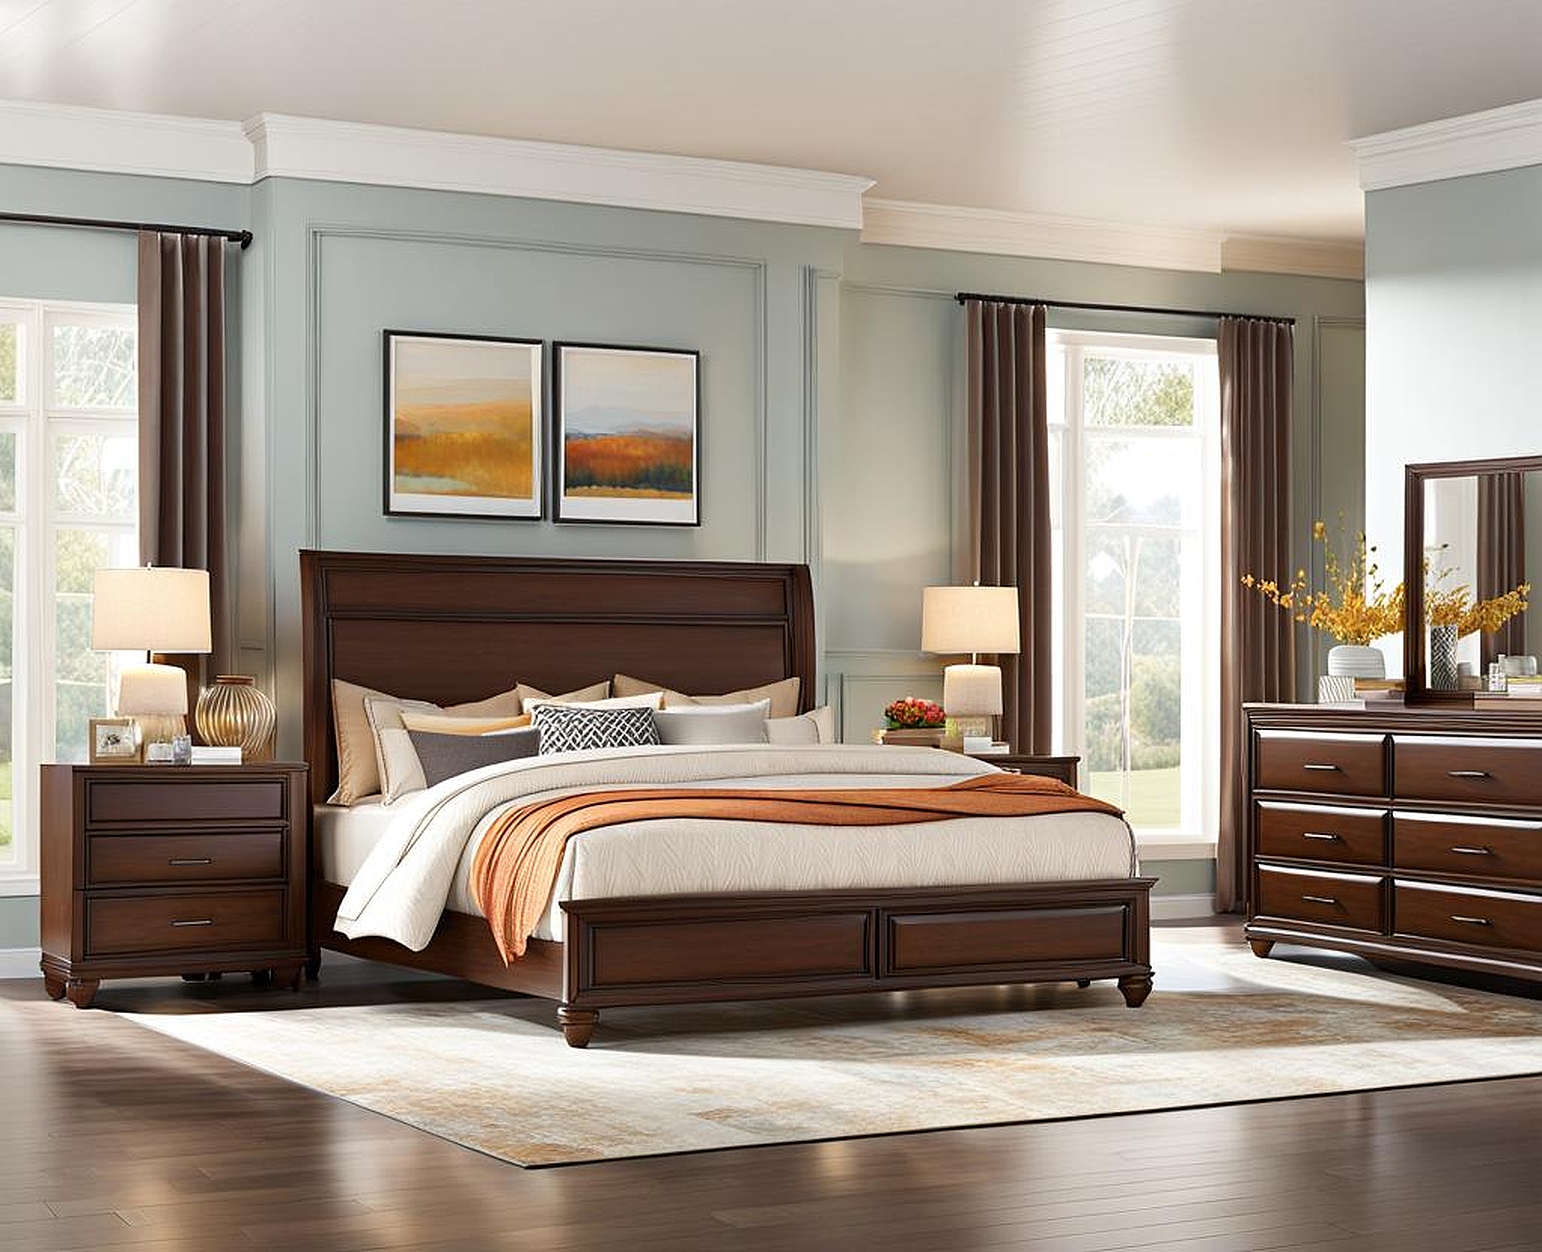 Elegant Darby Furniture Bedroom Sets for a Sophisticated Bedroom